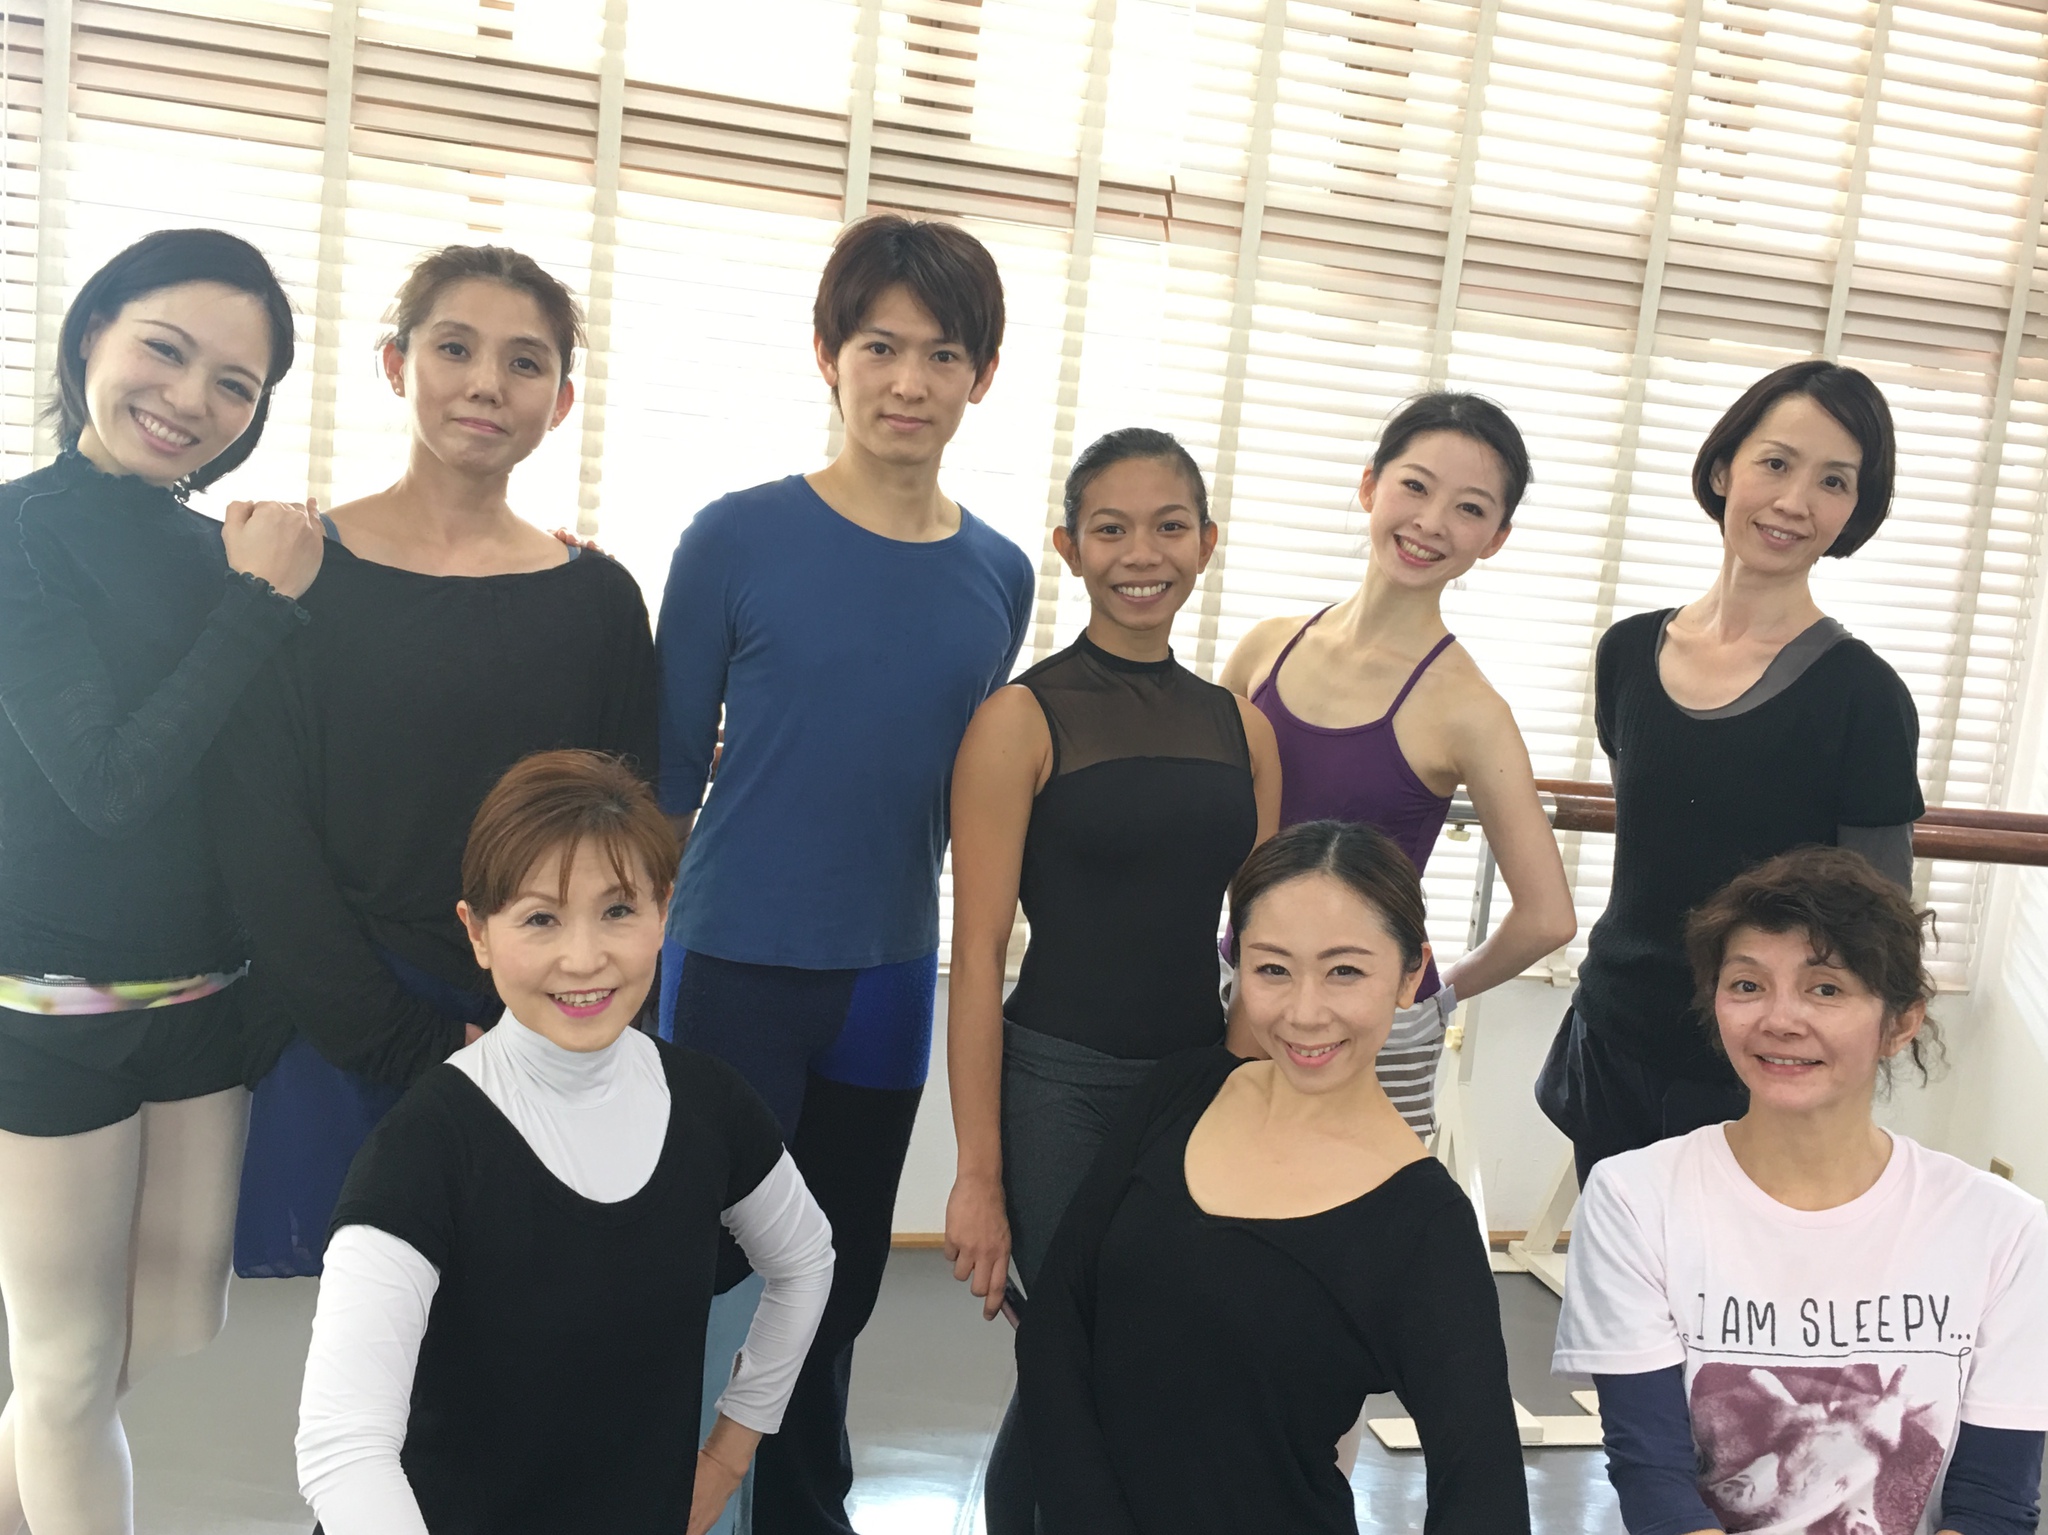 沖縄でバレエなら 緑間バレエスタジオ 緑間バレエスタジオのブログ Webクラスもスタート 18年02月13日